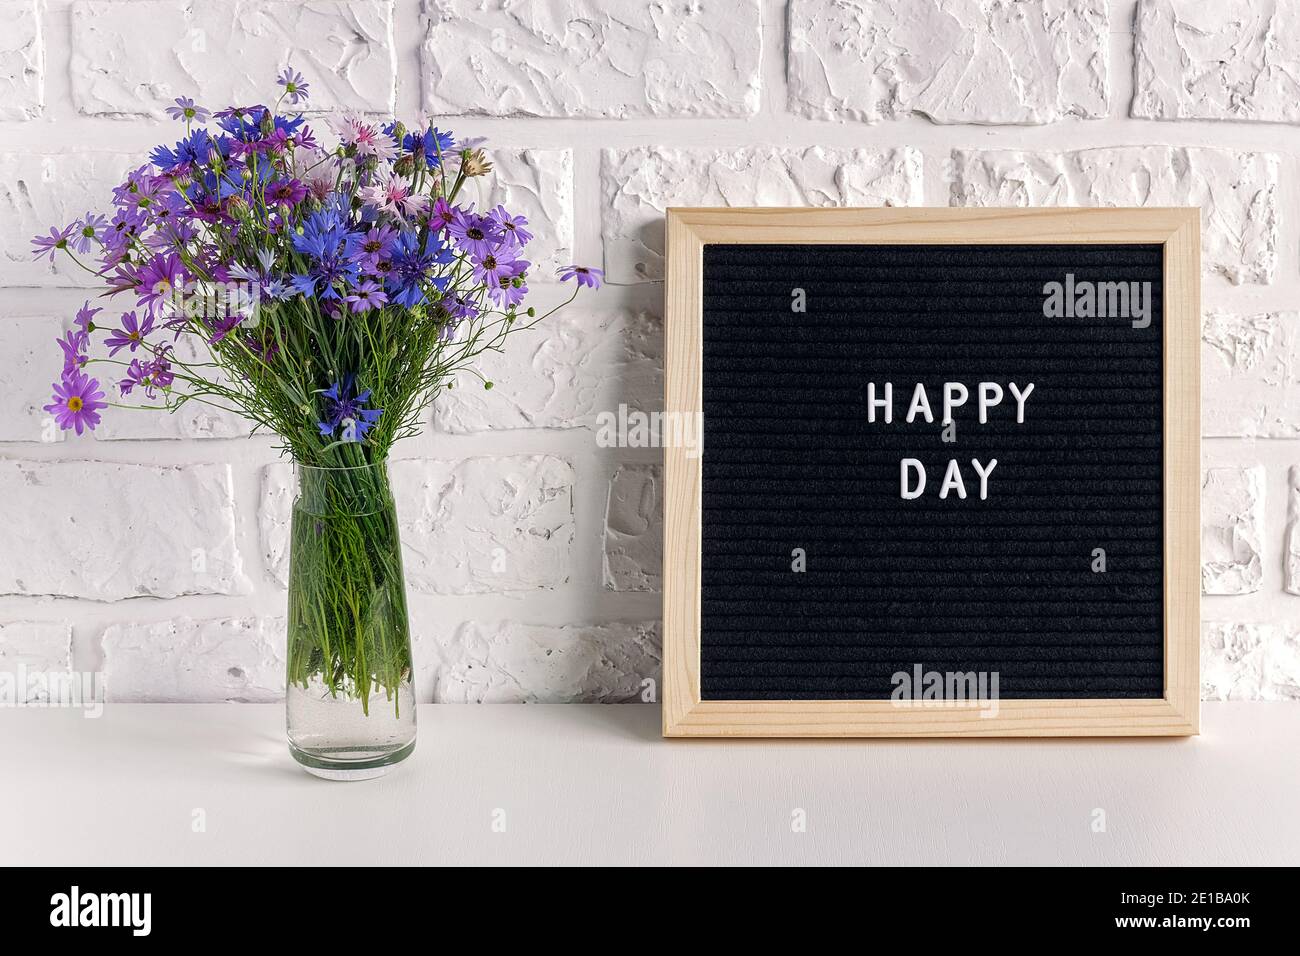 Happy Day Text auf schwarzem Briefbrett und Blumenstrauß blaue Blumen in Vase auf dem Tisch gegen weiße Ziegelwand. Stockfoto